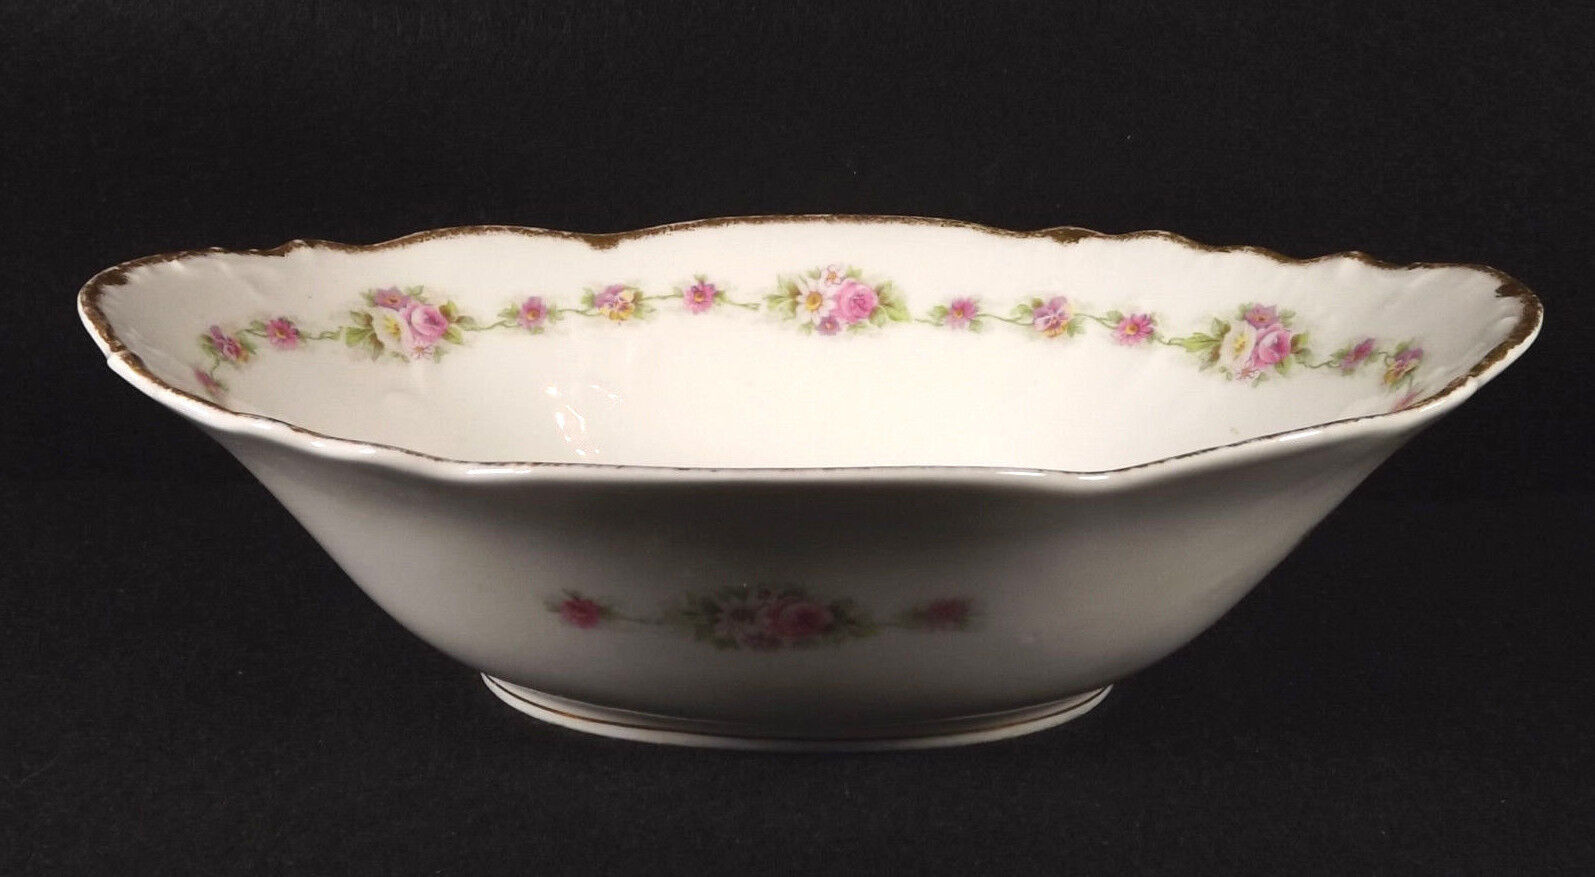 Limoges Elite Works Oval Bowl Pink Roses Brushed Gold Trim France Porcelain